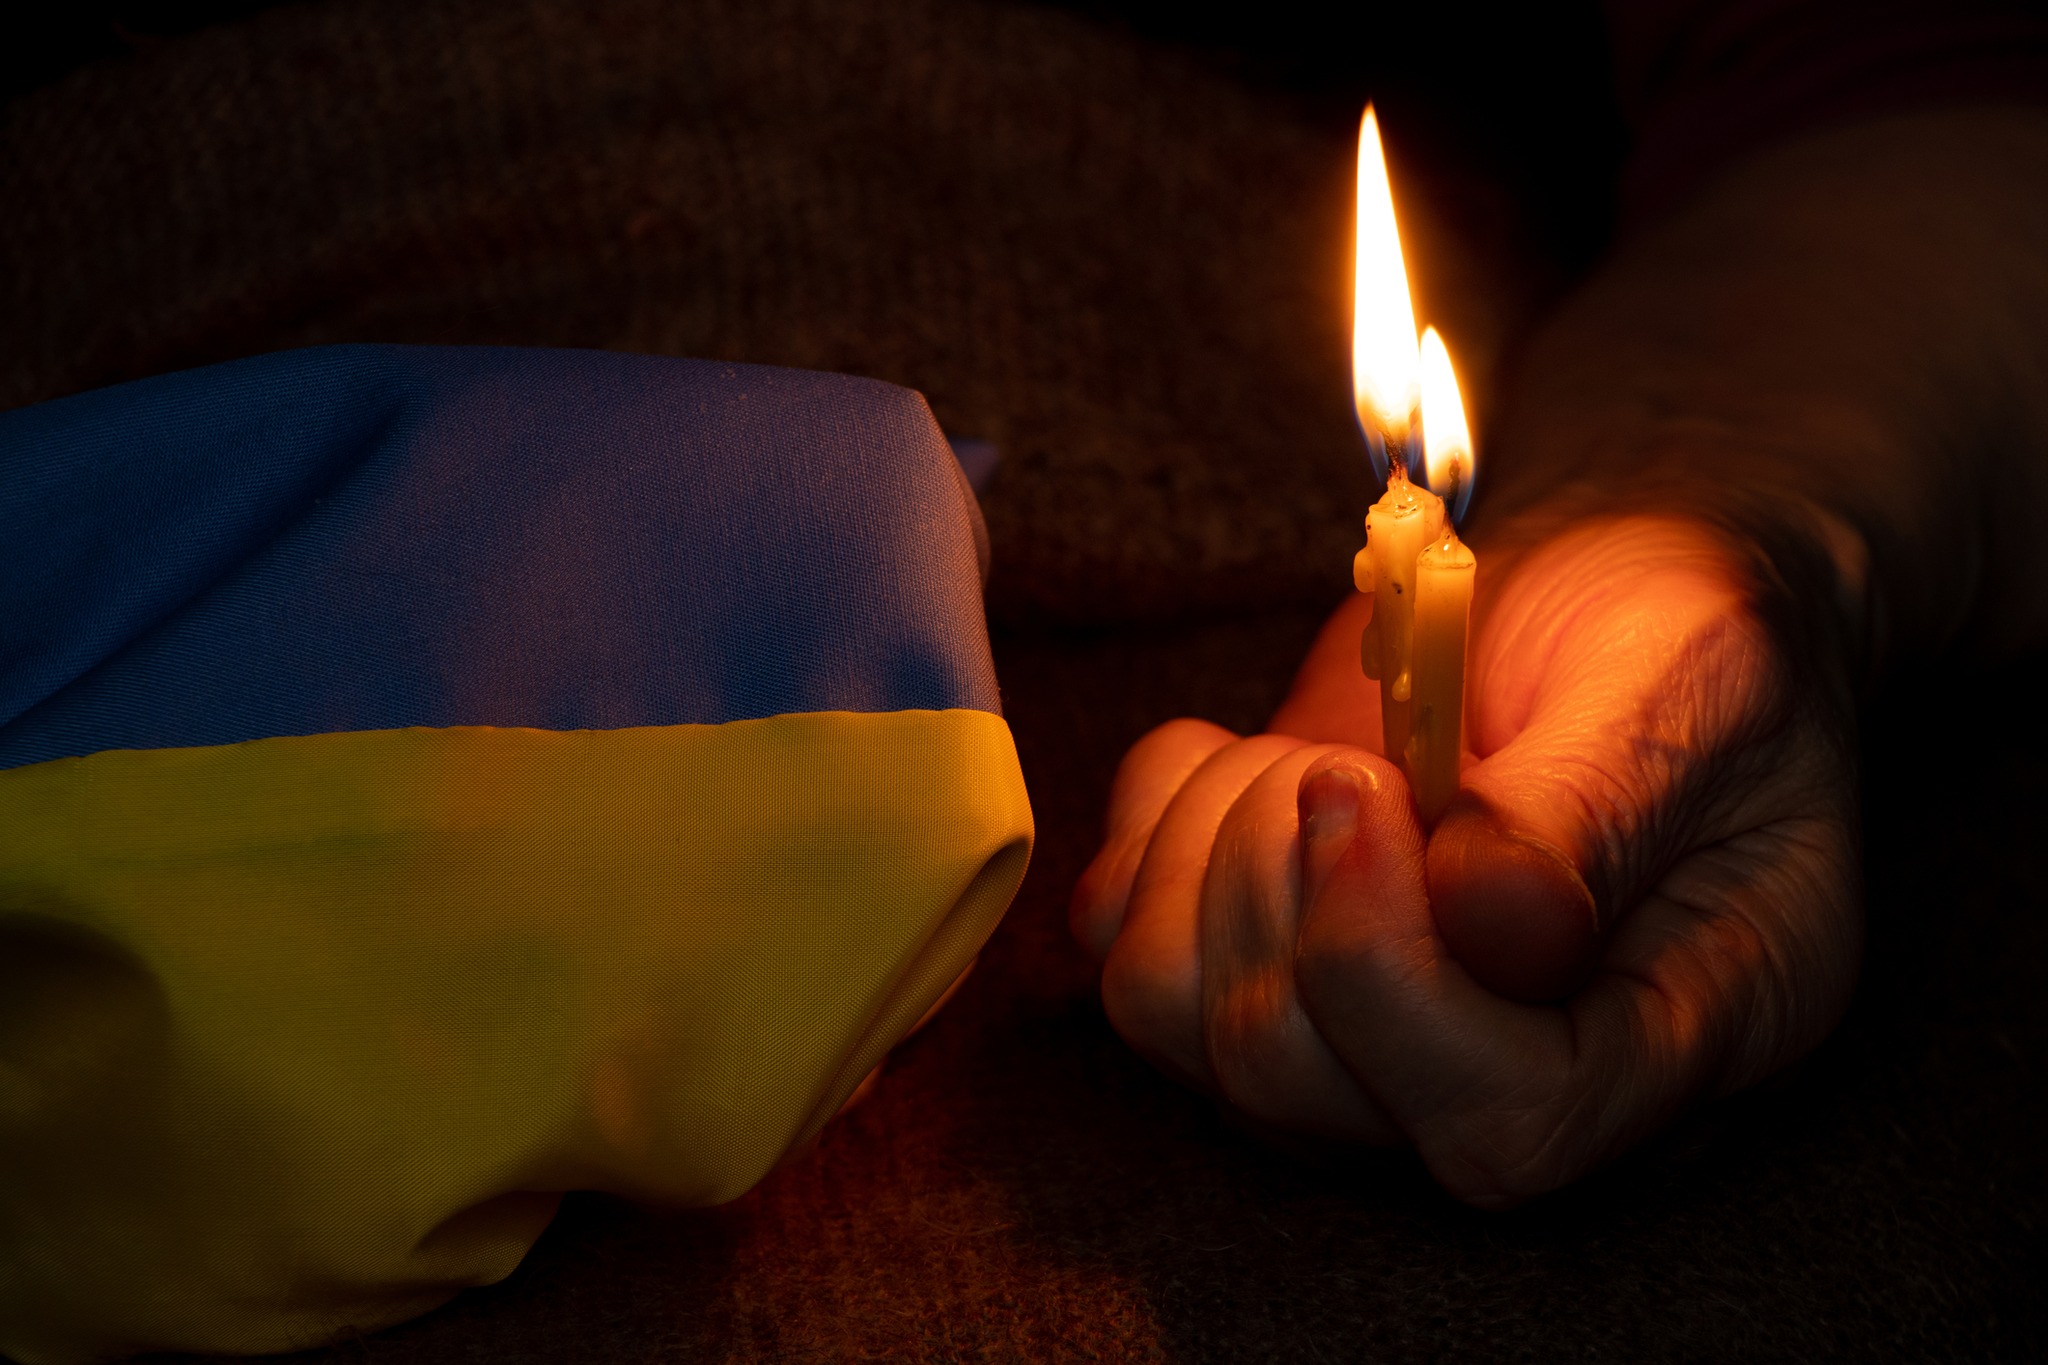 Lenten Service for Ukraine: Praying for Peace